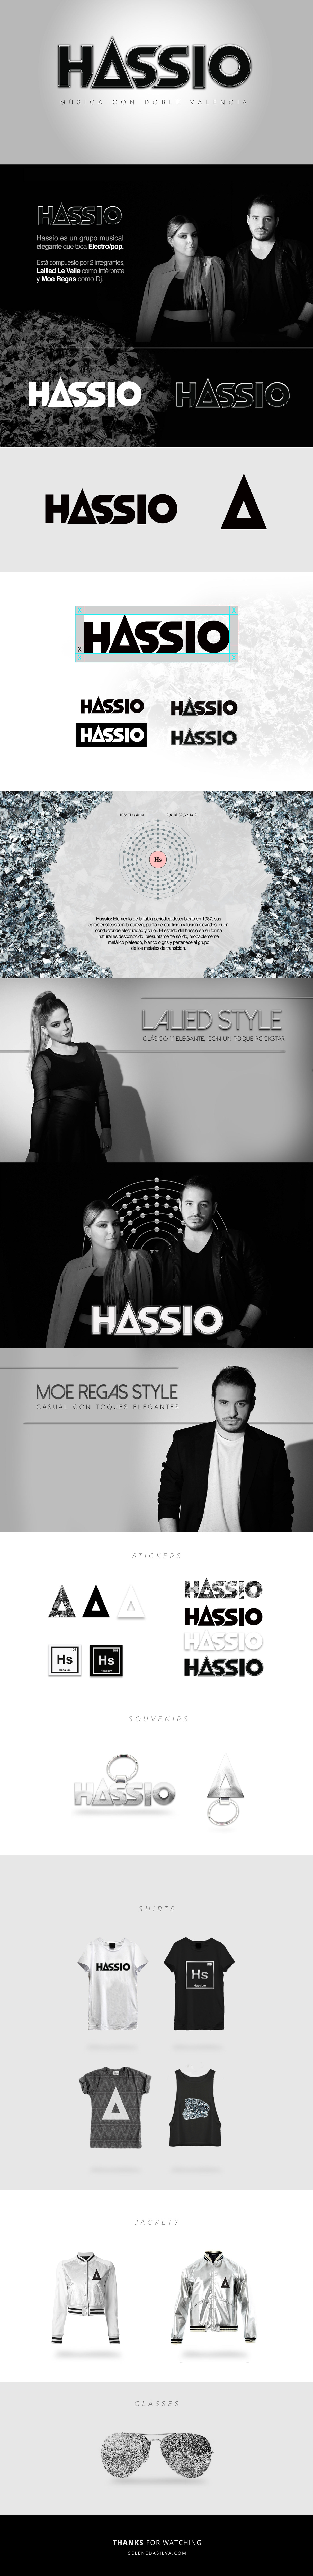 Hassio Branding